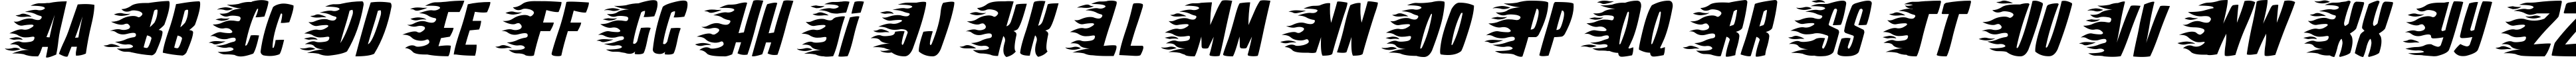 Пример написания английского алфавита шрифтом Play With Fire